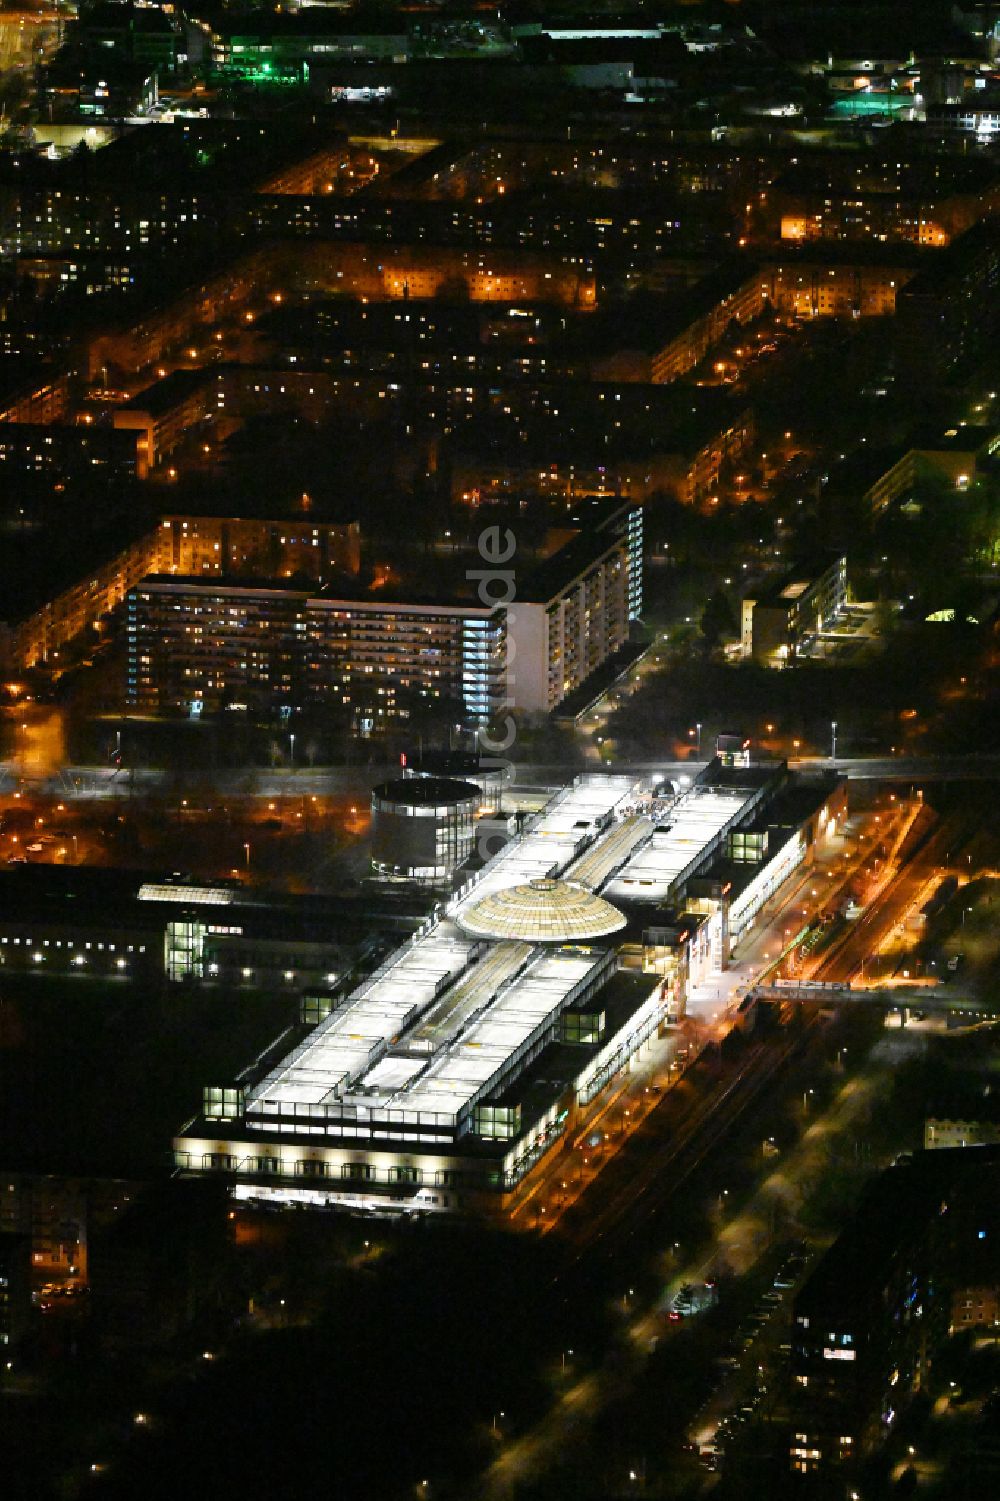 Leipzig bei Nacht von oben - Nachtluftbild Einkaufzentrum Allee-Center im Ortsteil Grünau in Leipzig im Bundesland Sachsen, Deutschland